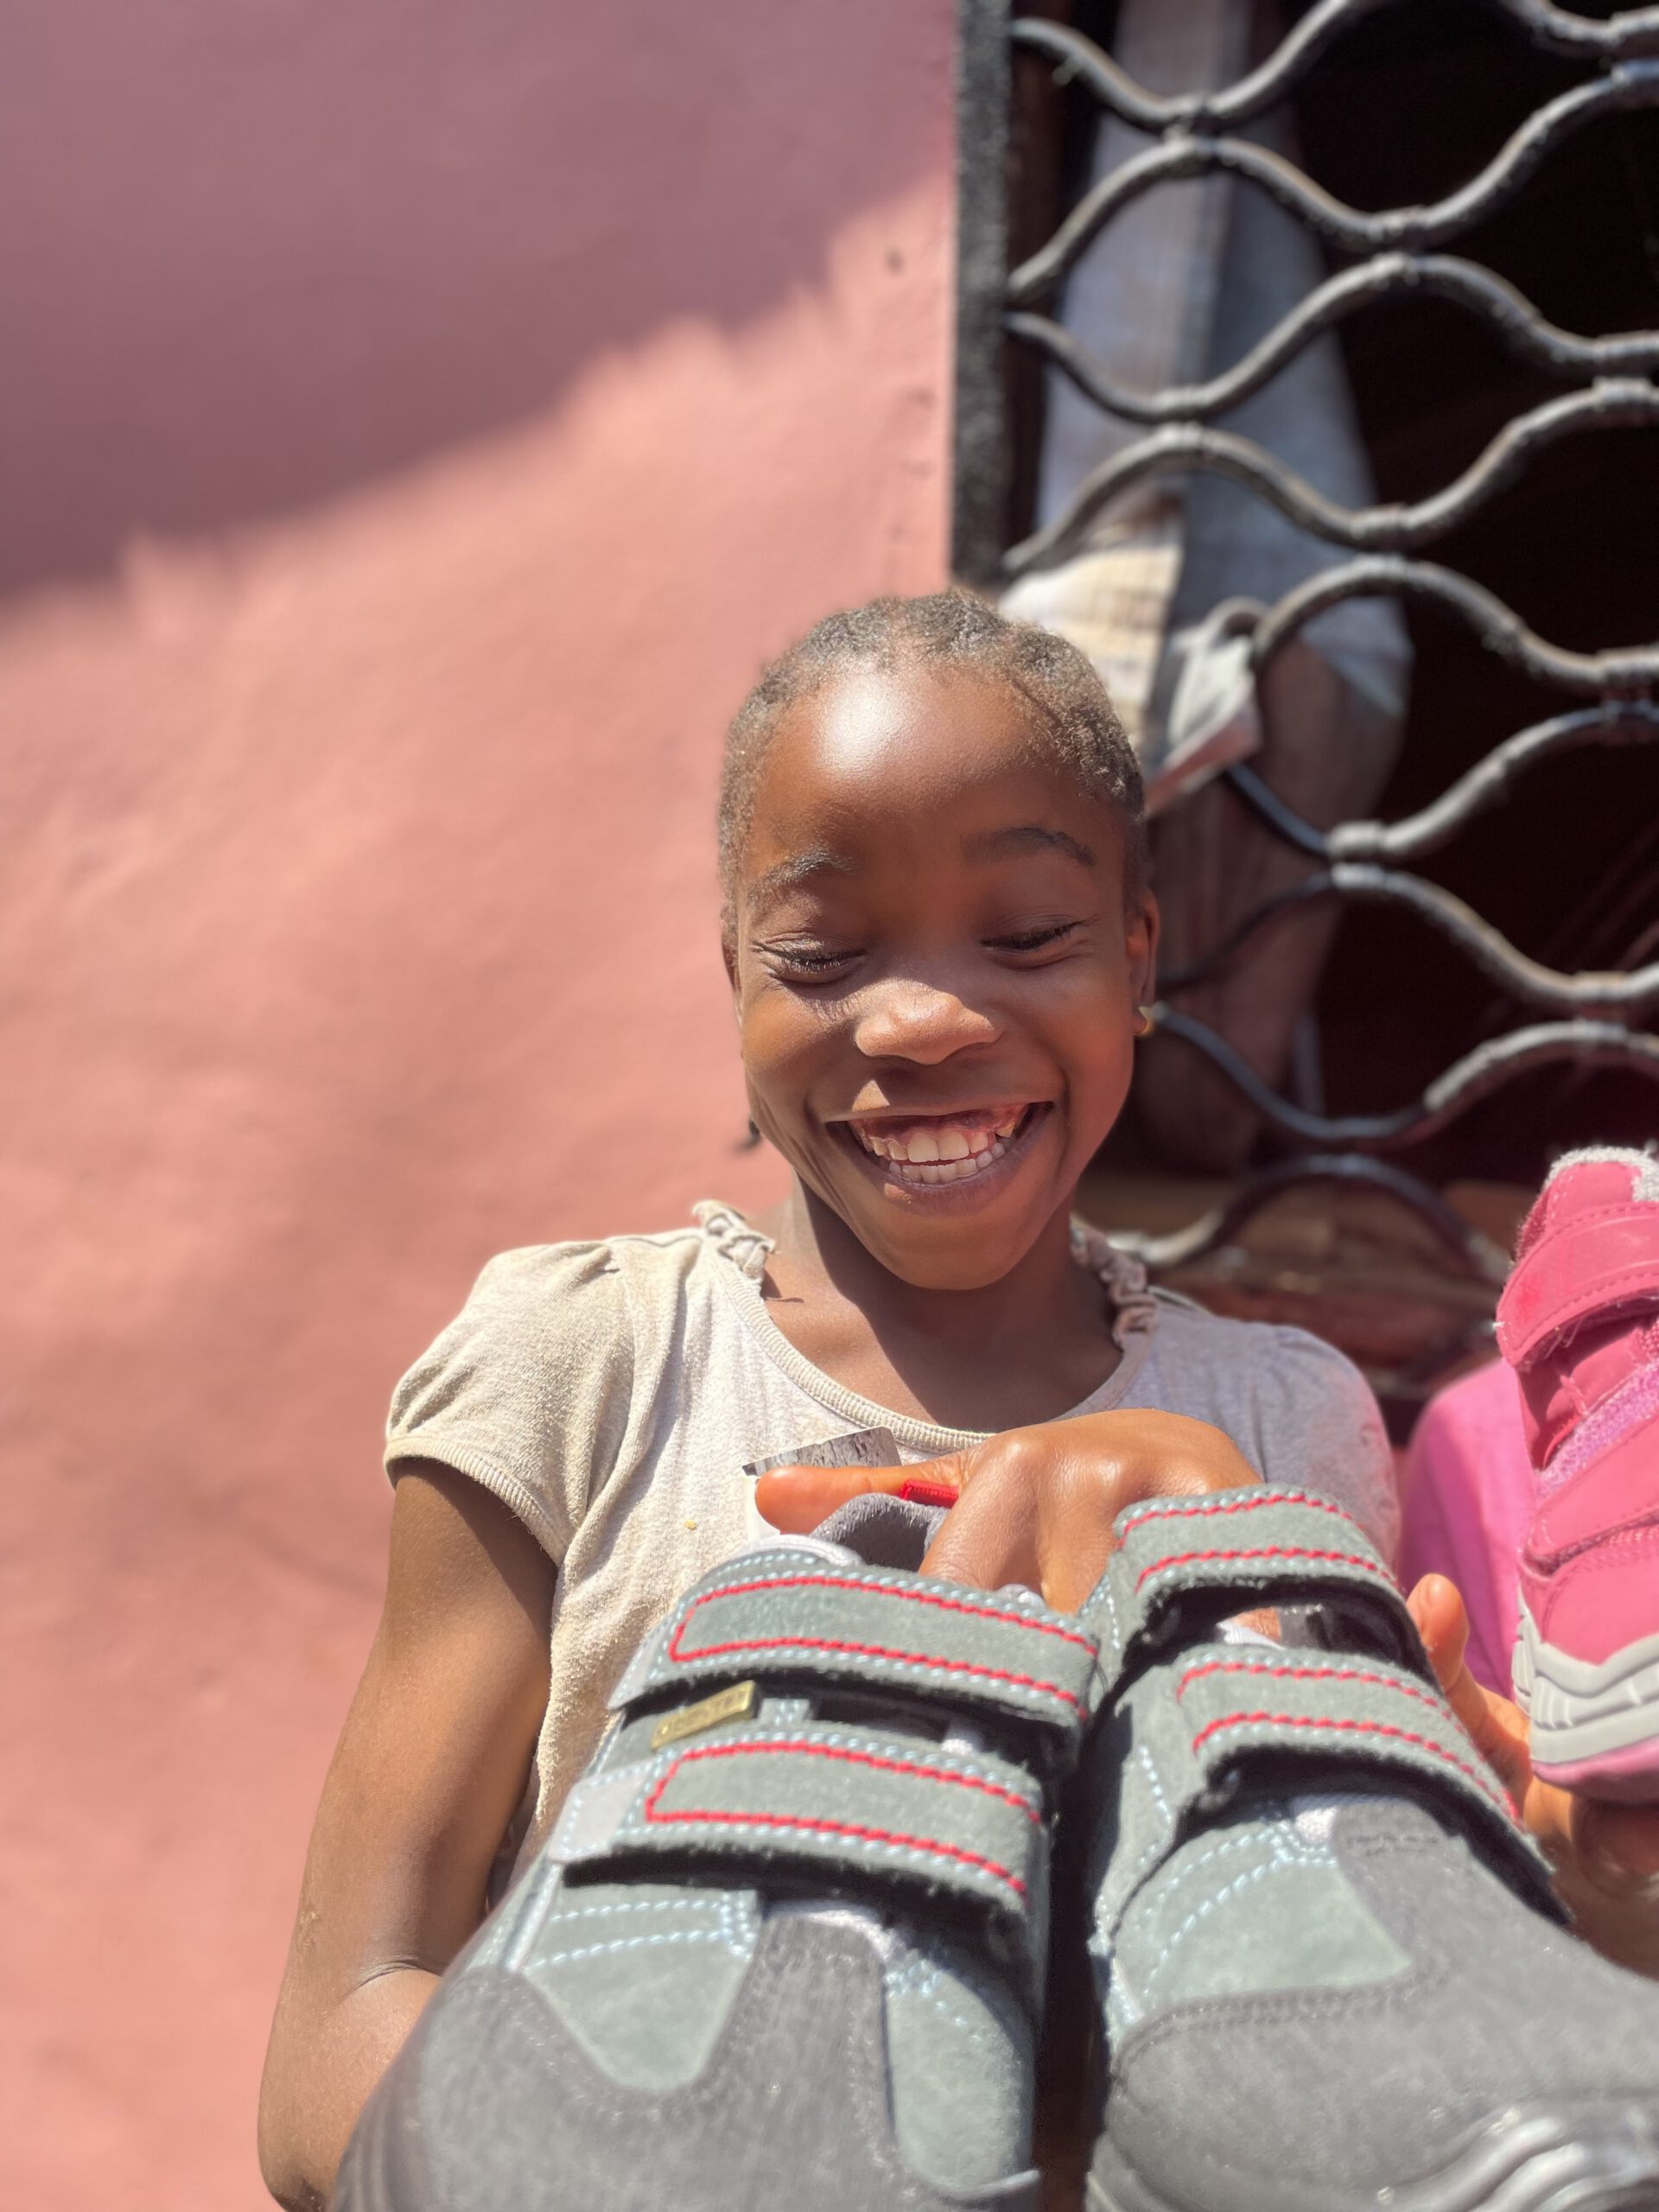 Eins unserer Waisenkinder freut sich riesig über die nagelneuen gespendeten  Schuhe